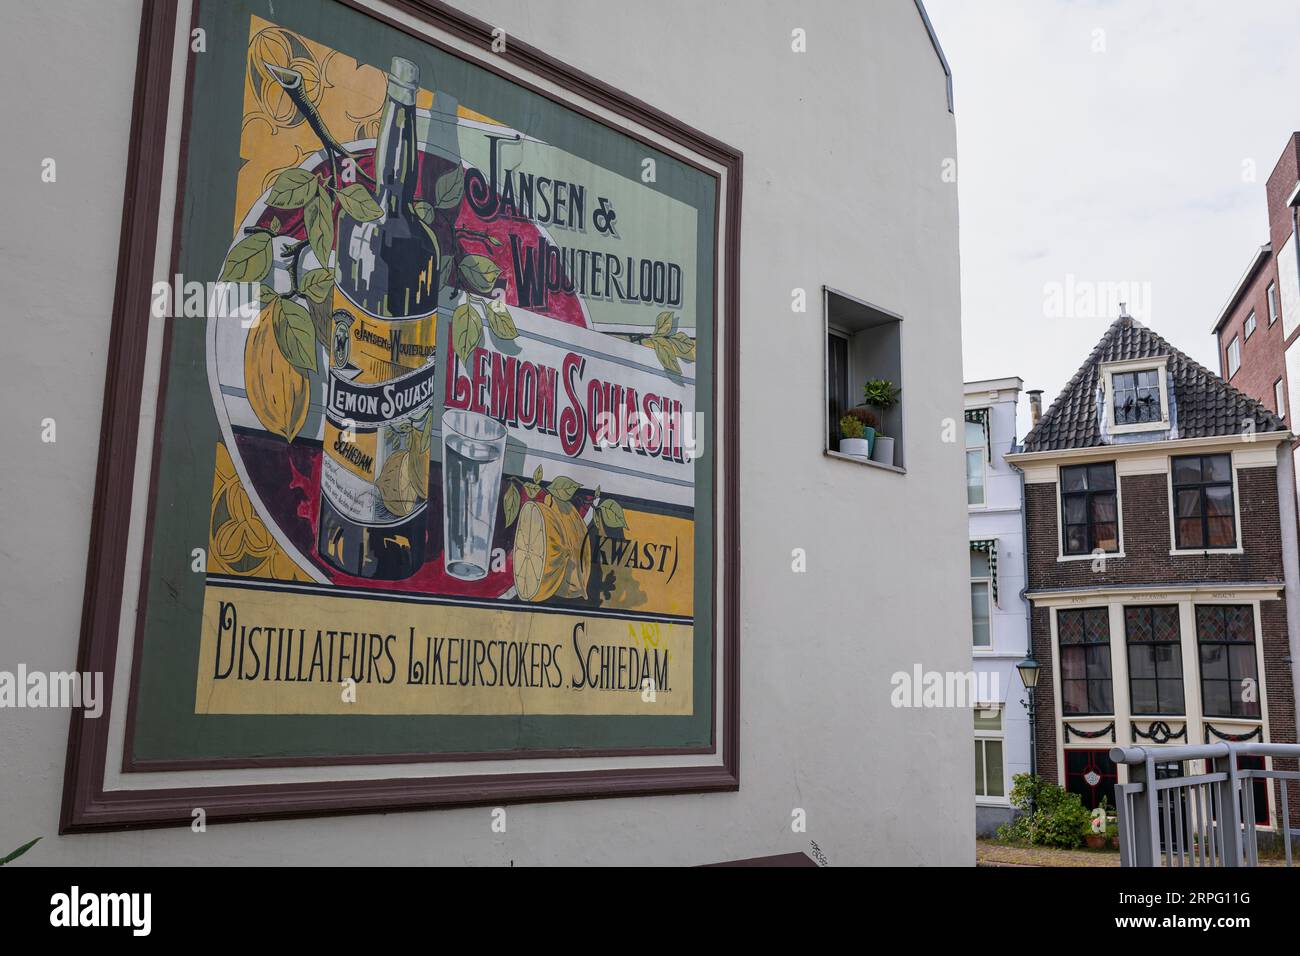 Vintage-Plakat von Jansen en Wouterlood Lemon Squash. Jansen en Wouterlood ist eine der mehr als 400 Destillerien, die einst in Schiedam hergestellt wurden Stockfoto